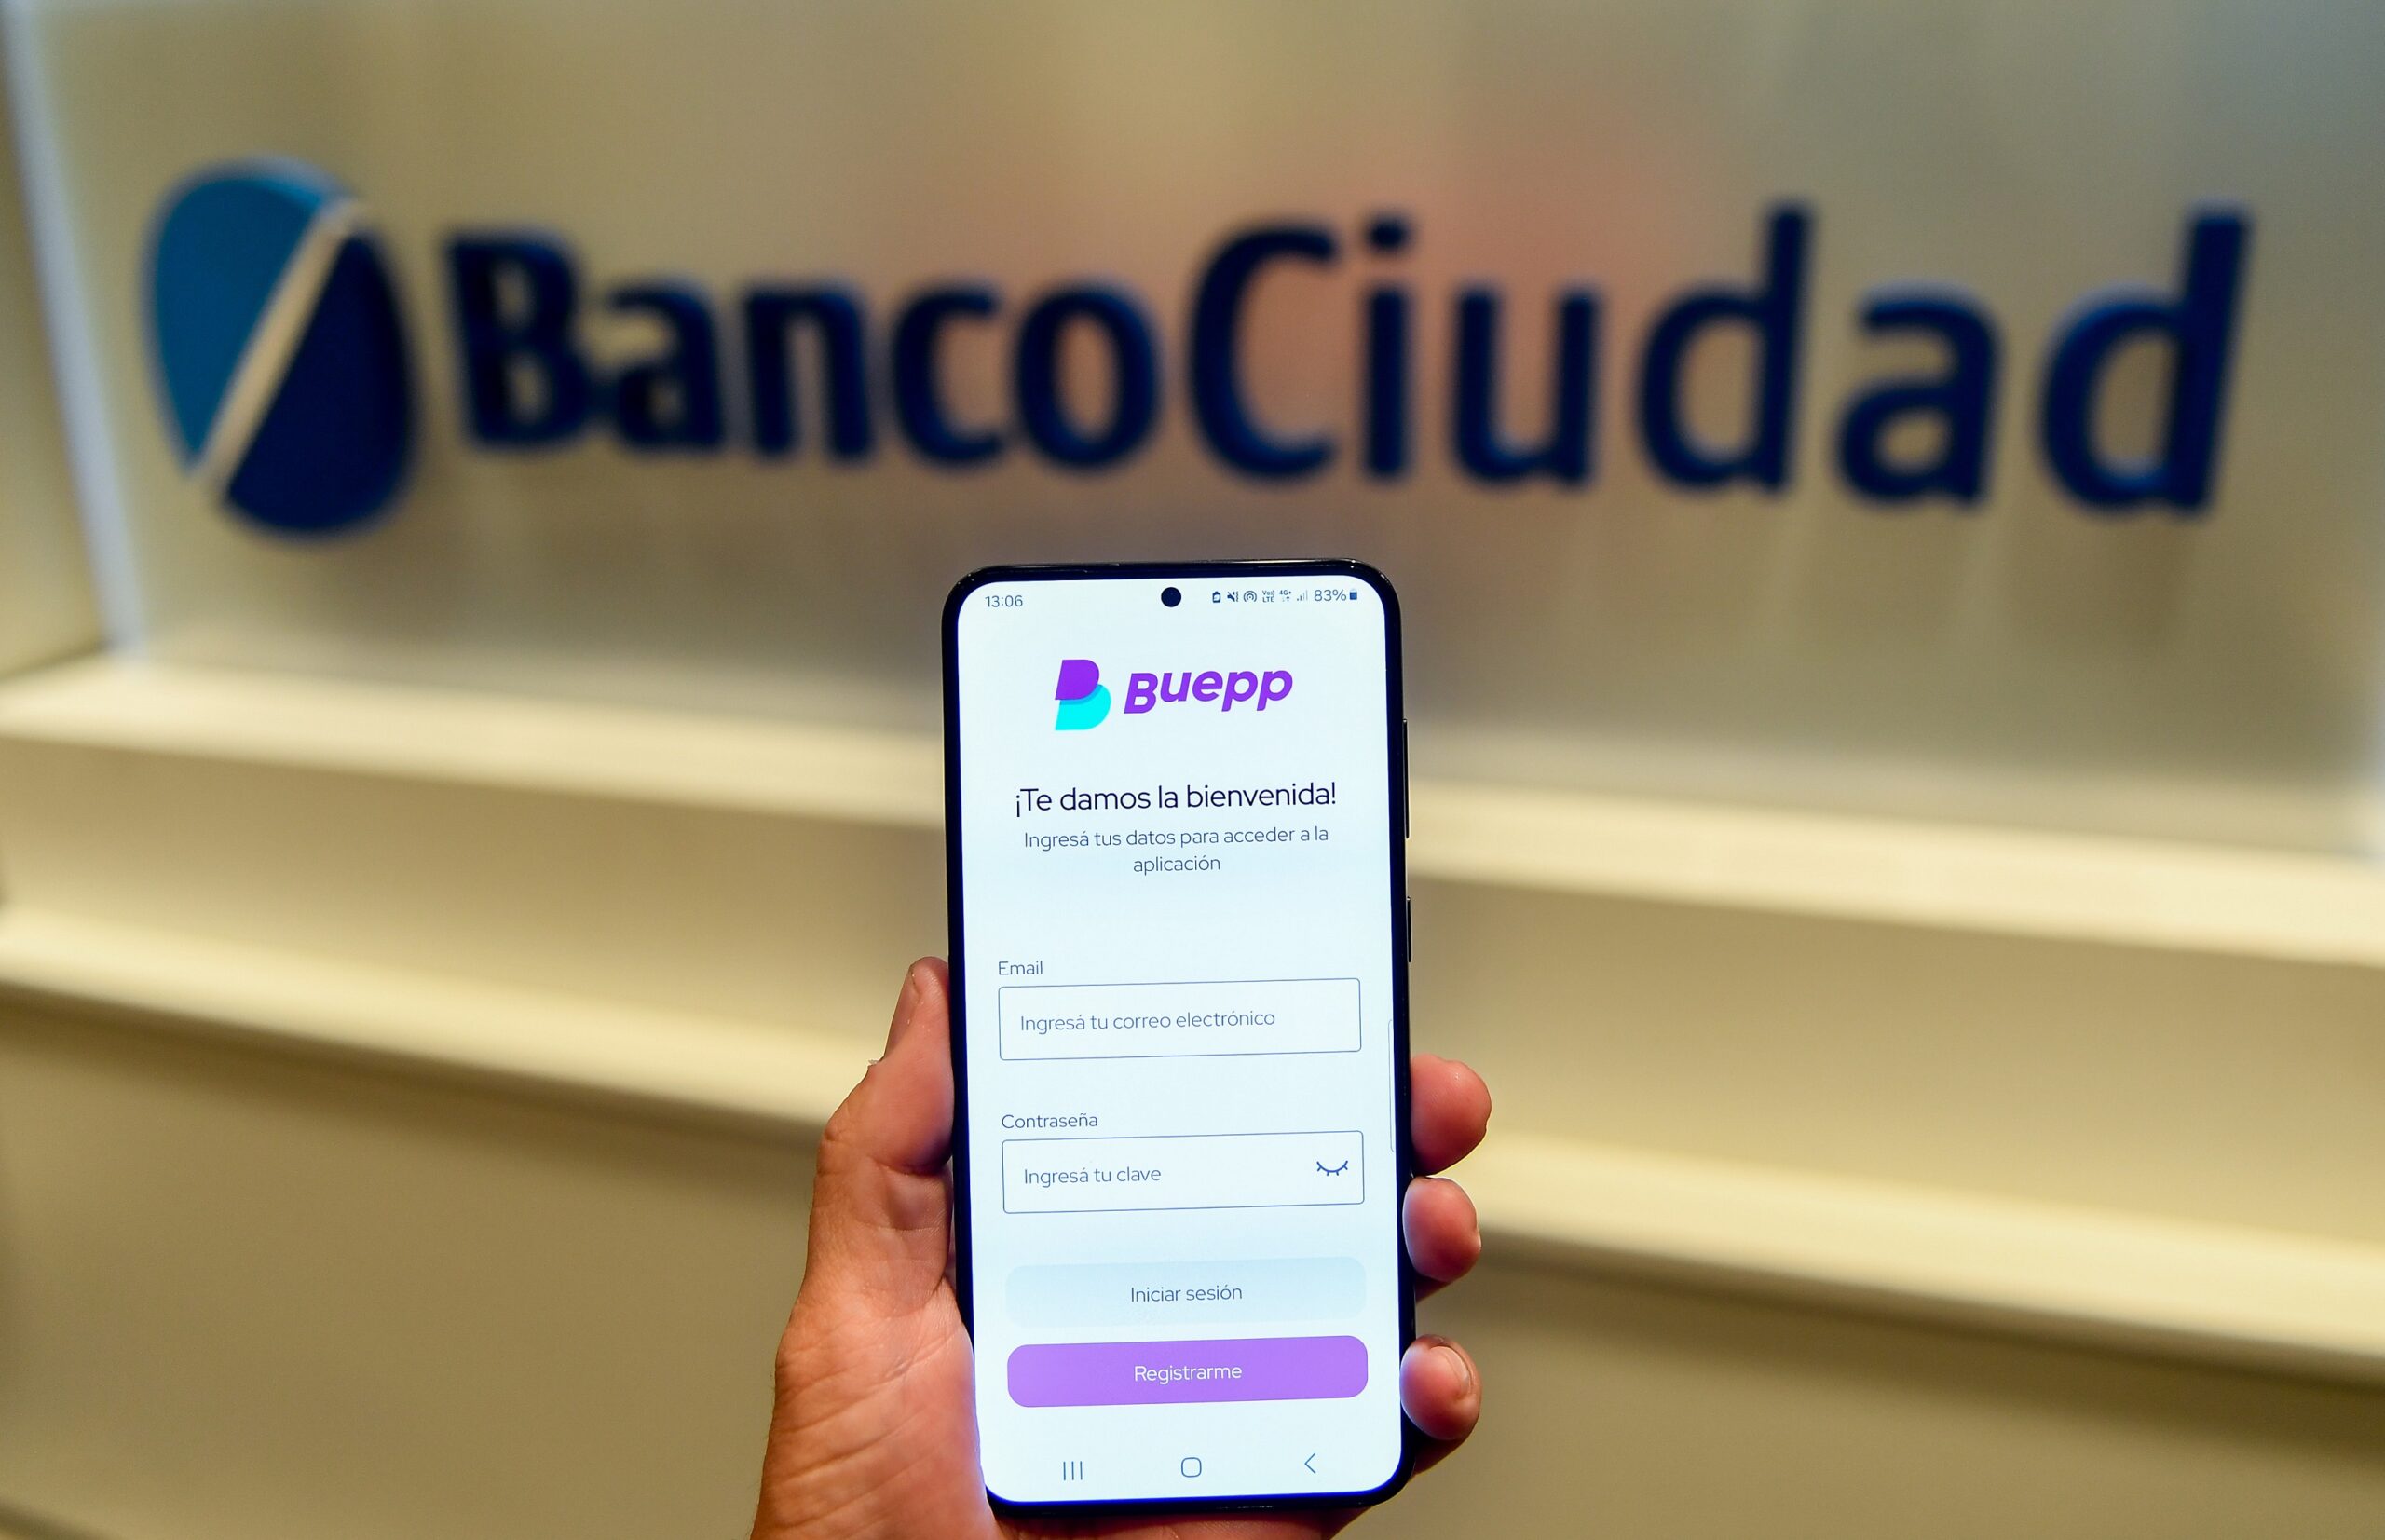 BUEPP, la nueva billetera digital de Banco Ciudad